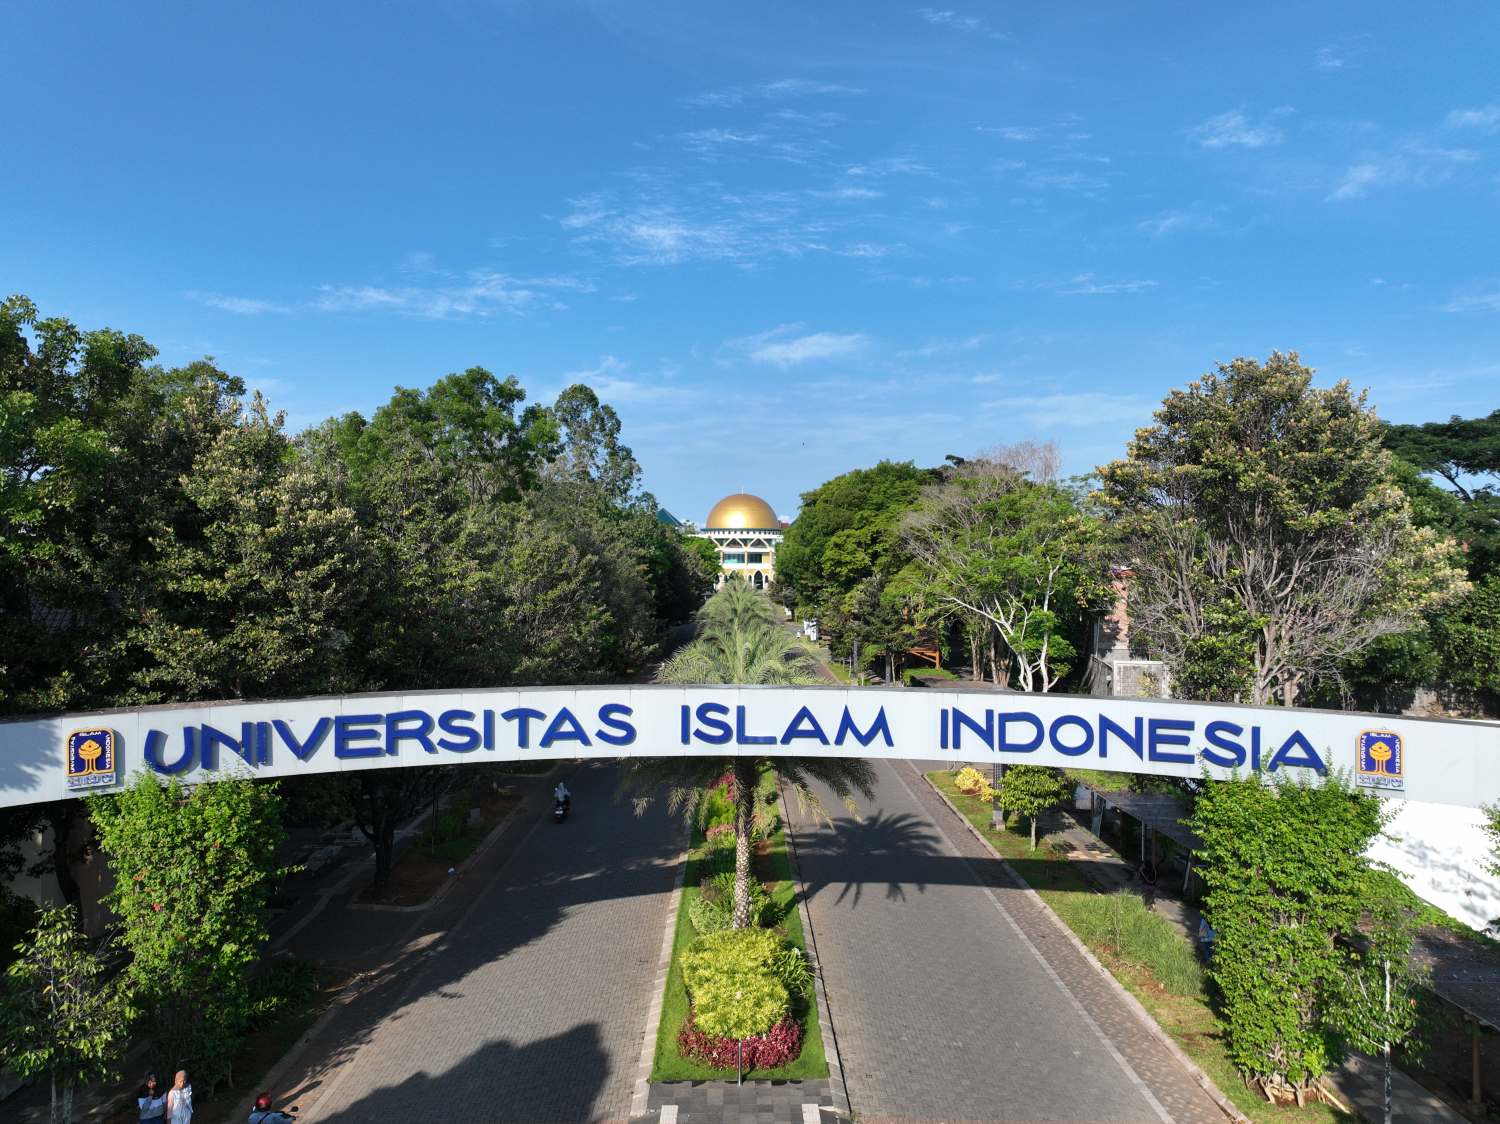 Universitas Islam Indonesia - Pernyataan Sikap